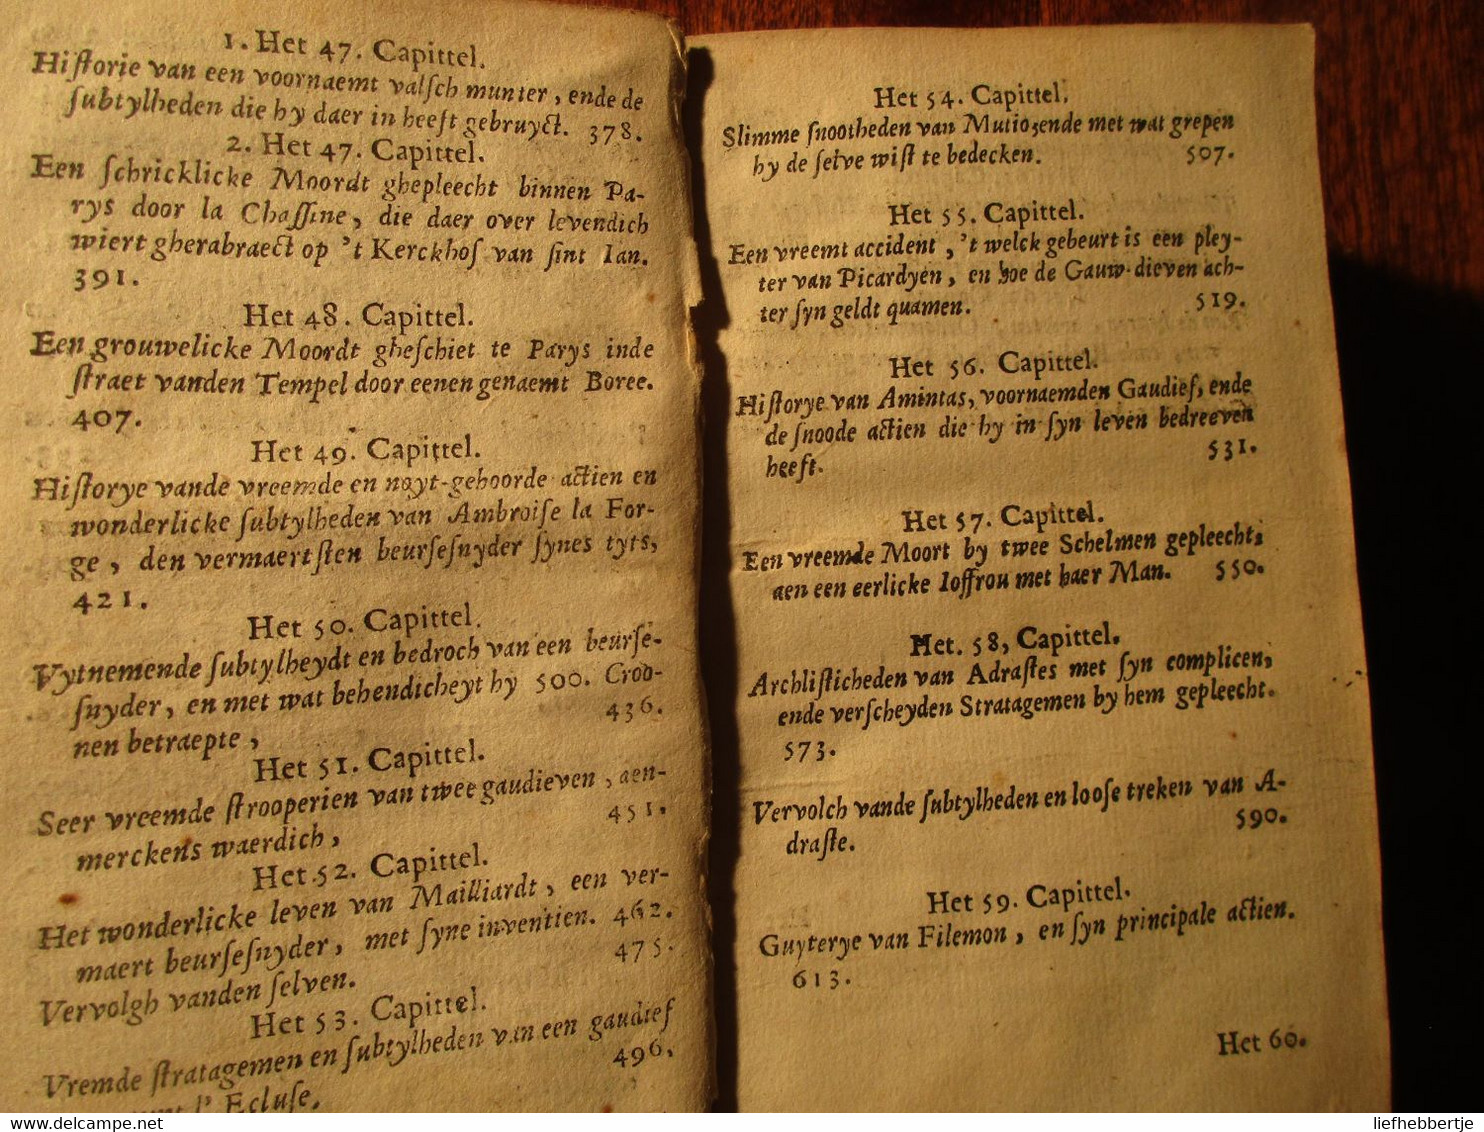 Legende oft historye van de snoode practijcquen ... der dieven - te Nieustadt bij Claes - 1649 - misdaaad